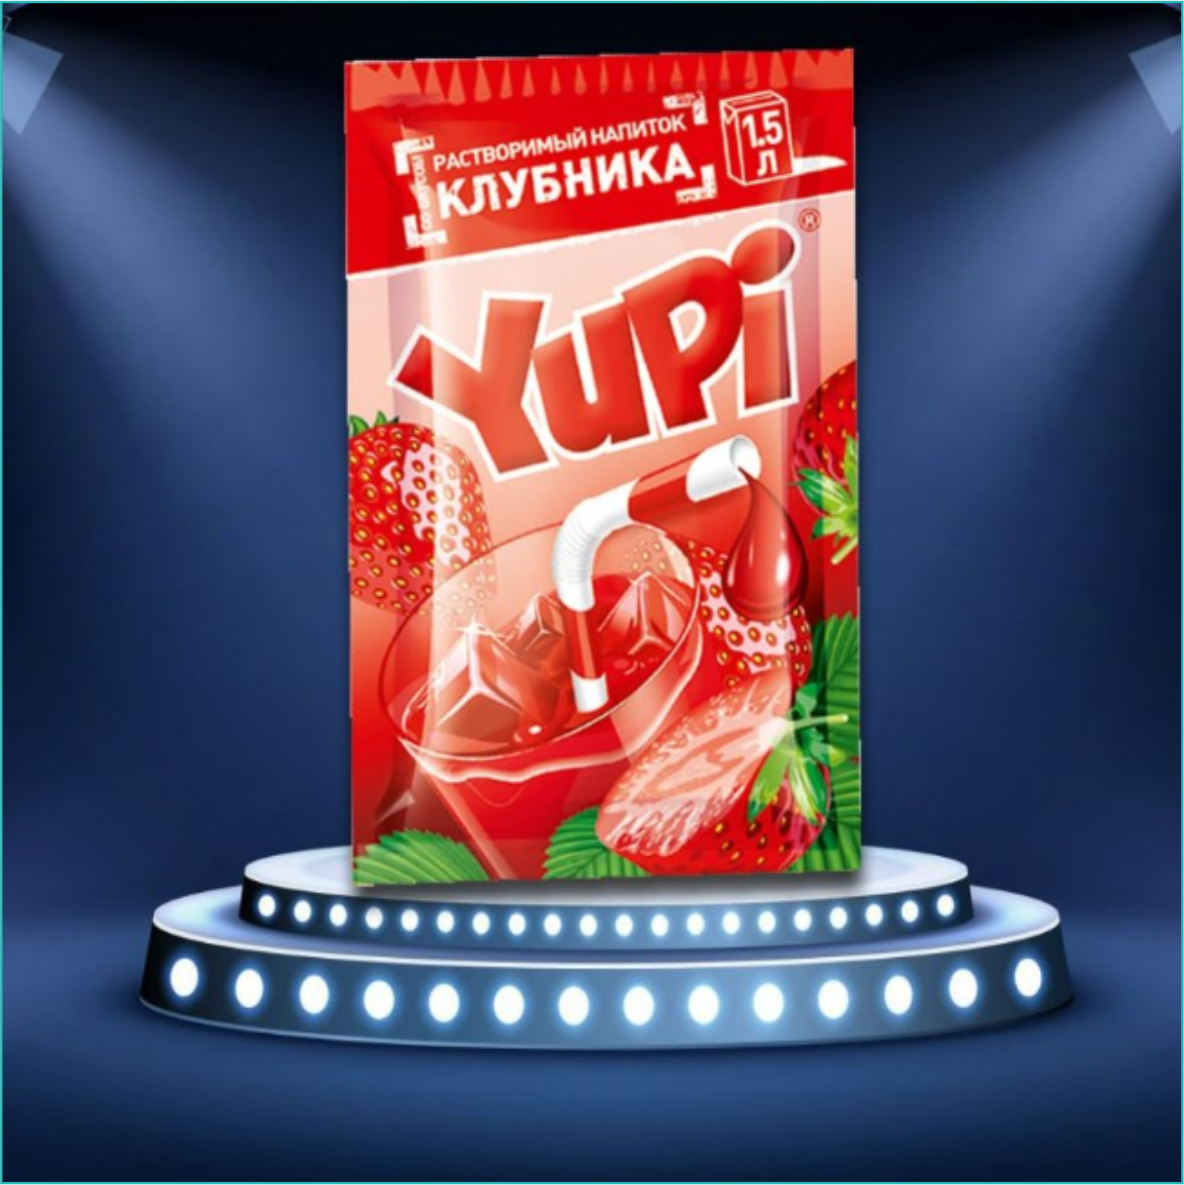 Yupi - Растворимый напиток (Клубника)